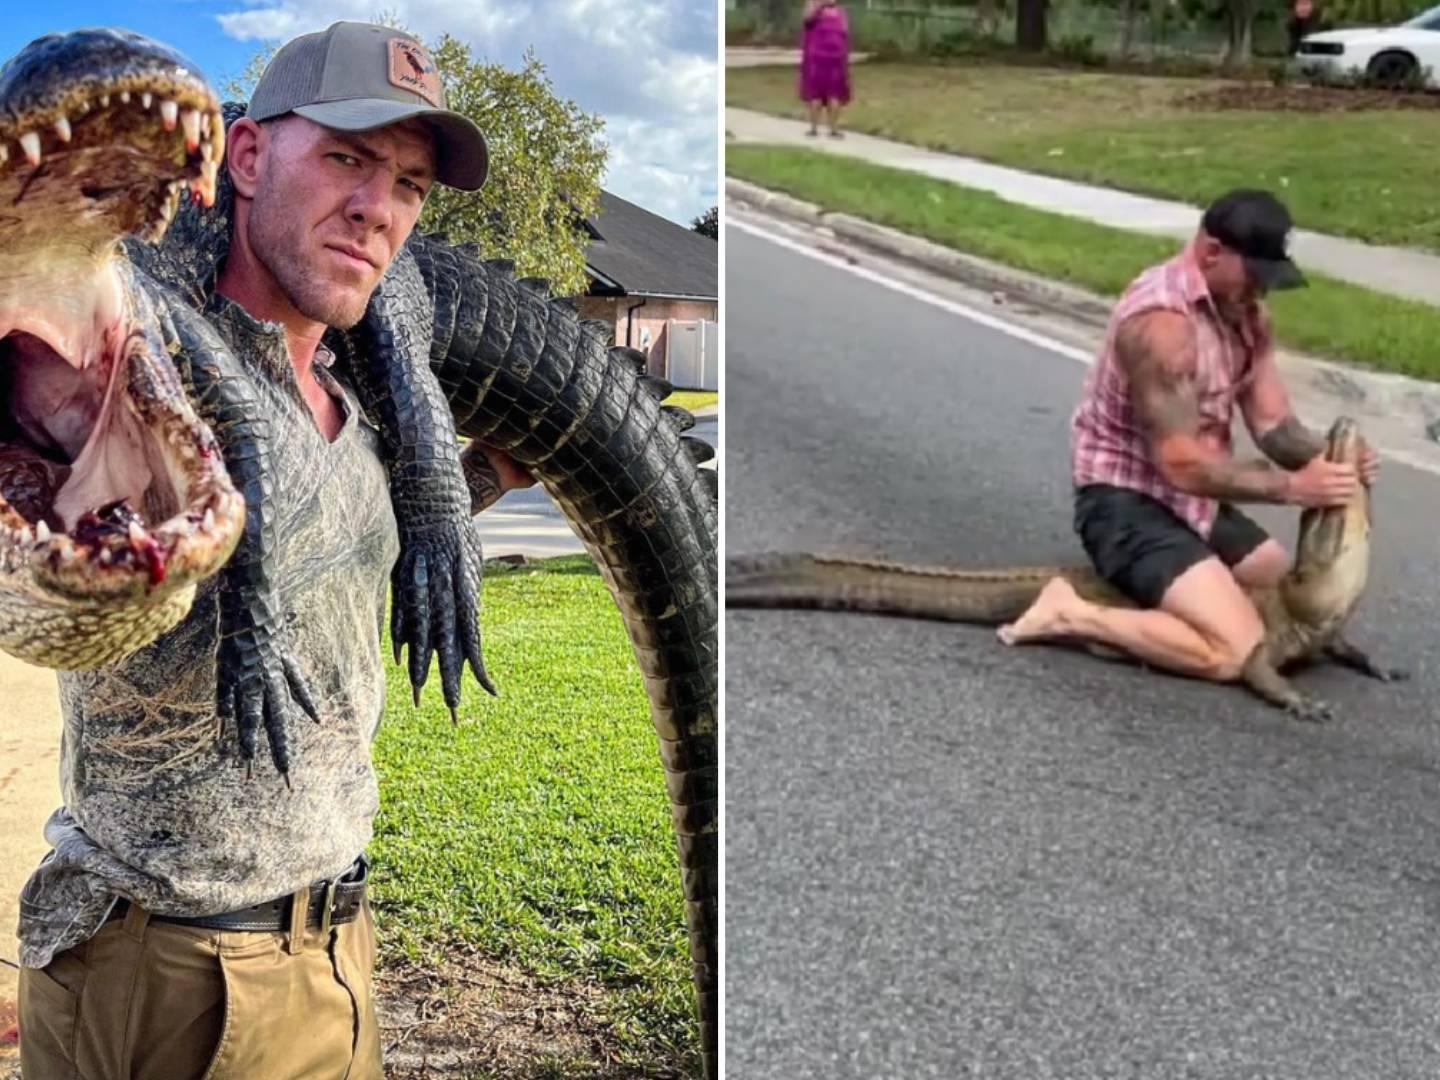 Mike Dragich, peleador de artes marciales mixtas, atrapó un caimán de más dos metros sin ayuda ni protección